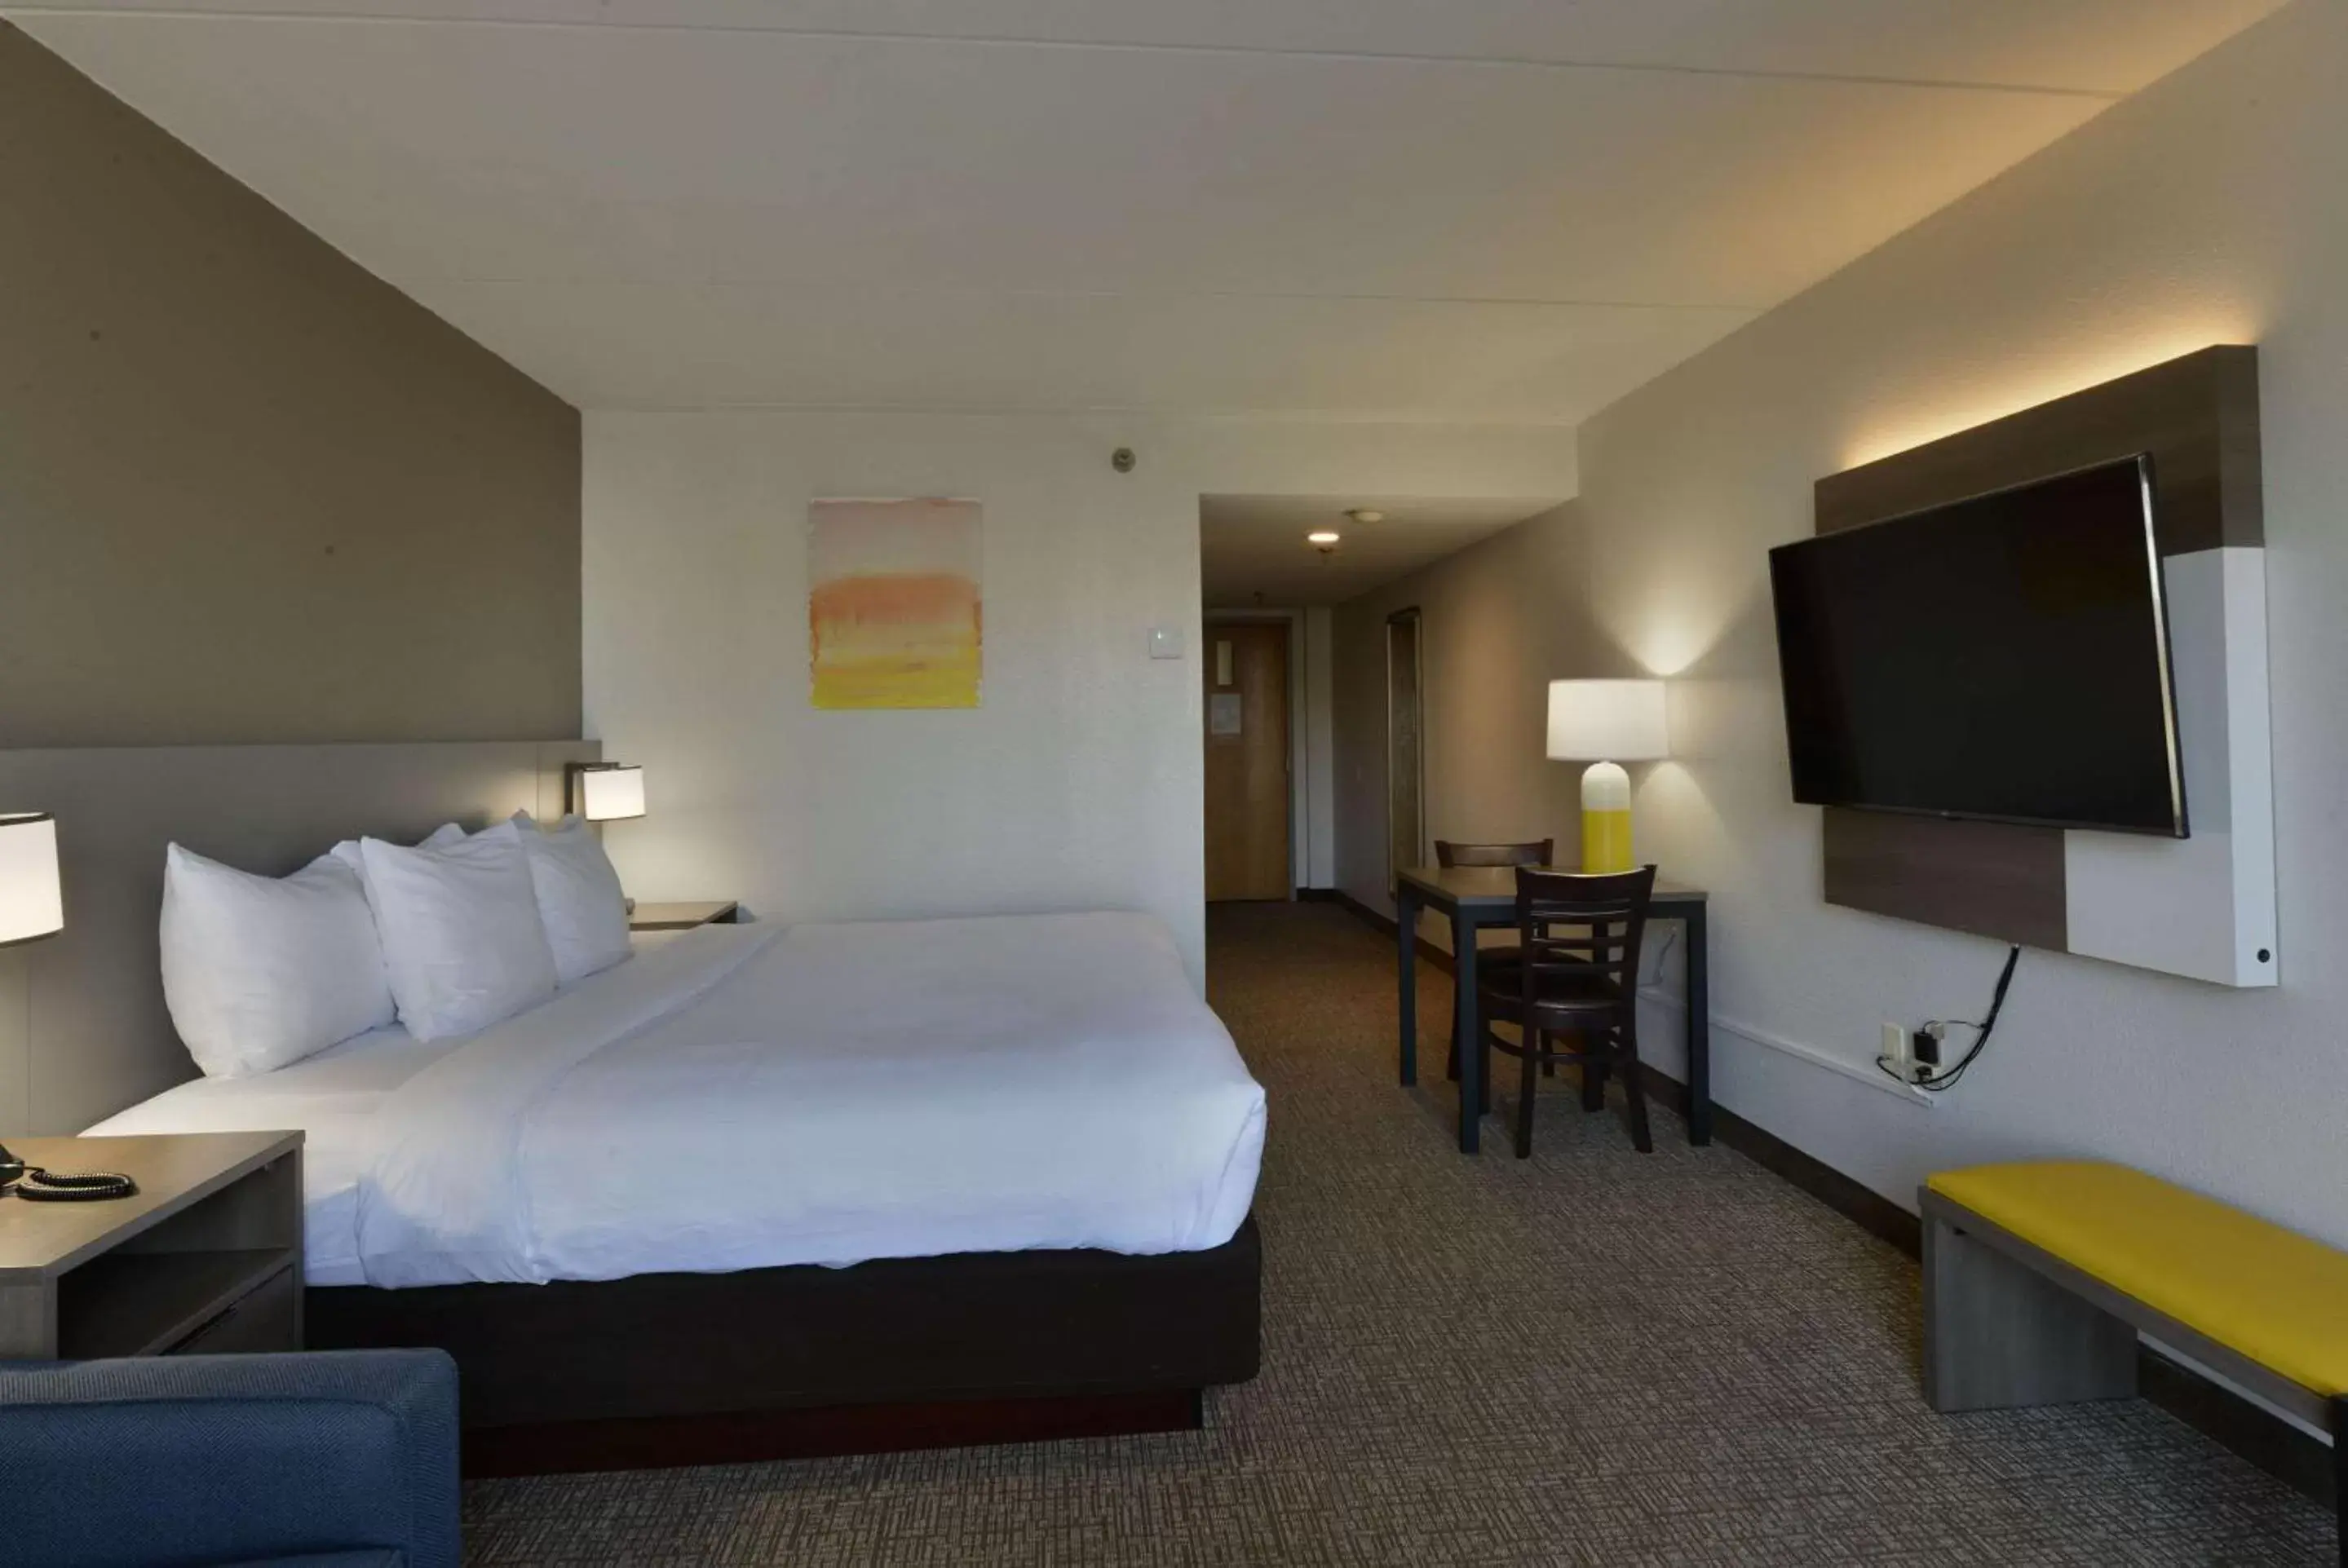 Bedroom in Comfort Inn Gold Coast